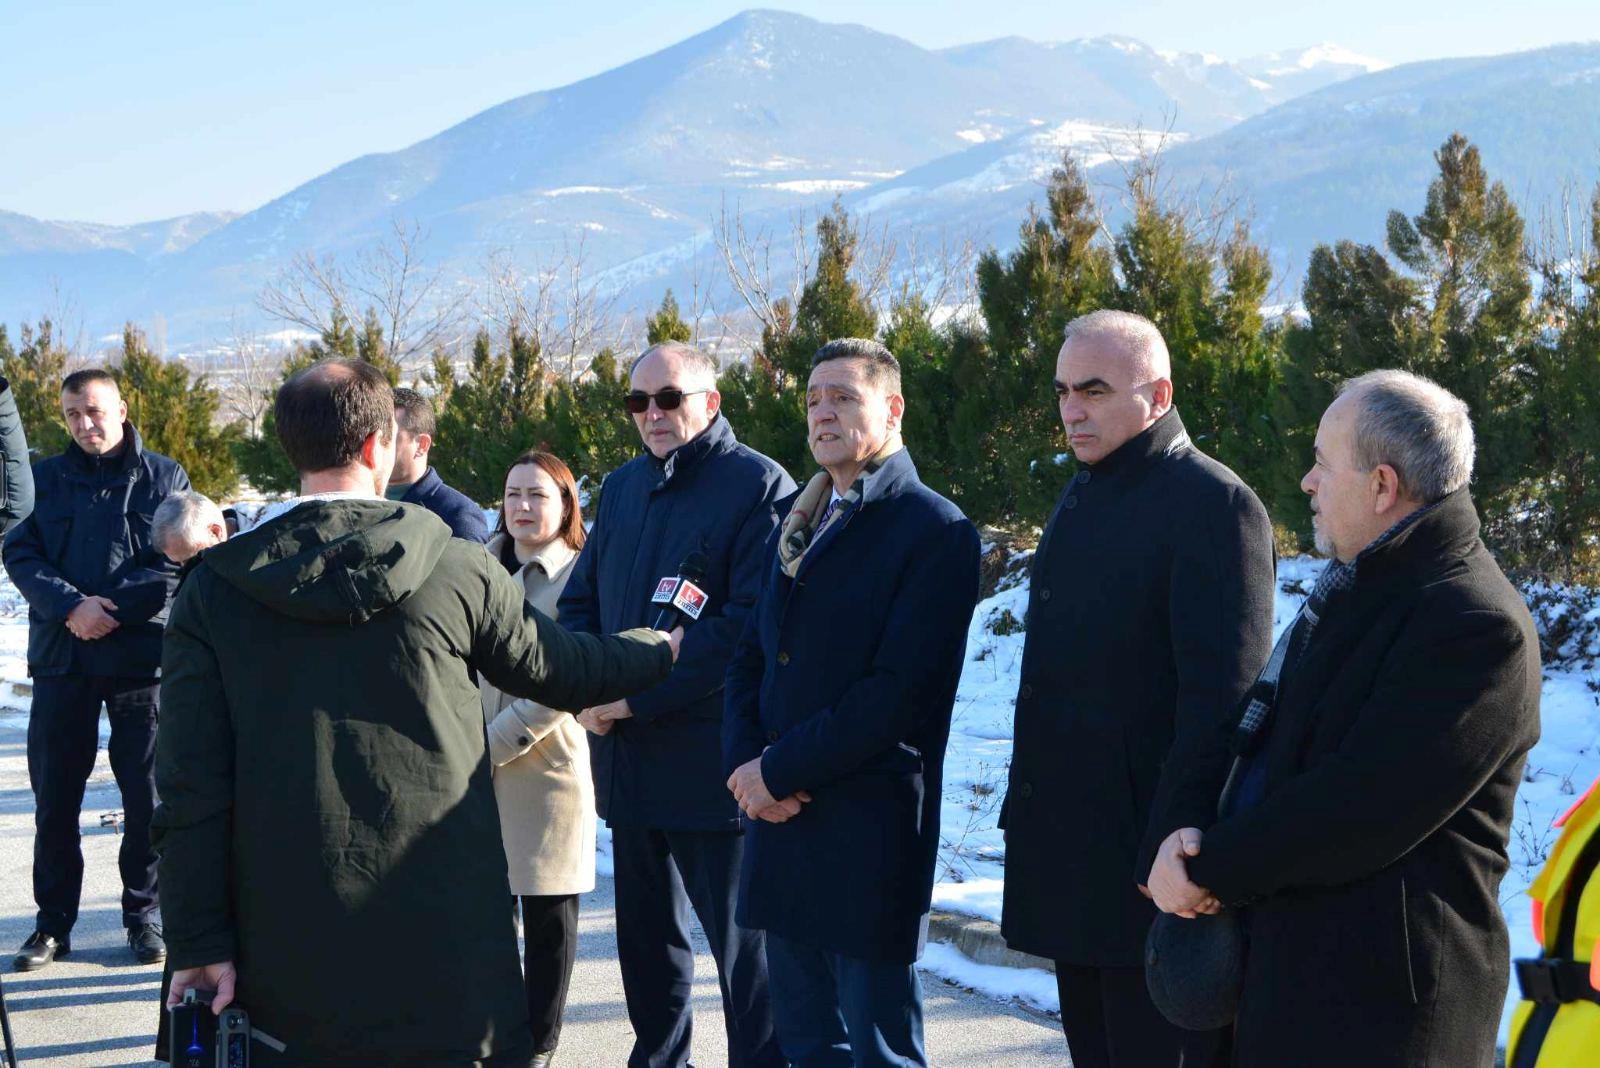 Agjencia e Menaxhimit Emergjent MPB në bashkëpunim me Komunën e Prizrenit dhe Shërbimin Emergjent Mjekësorë janë në procesin e përgatitje së Modulit Nacional për fikjen e zjarreve të hapura GFFF